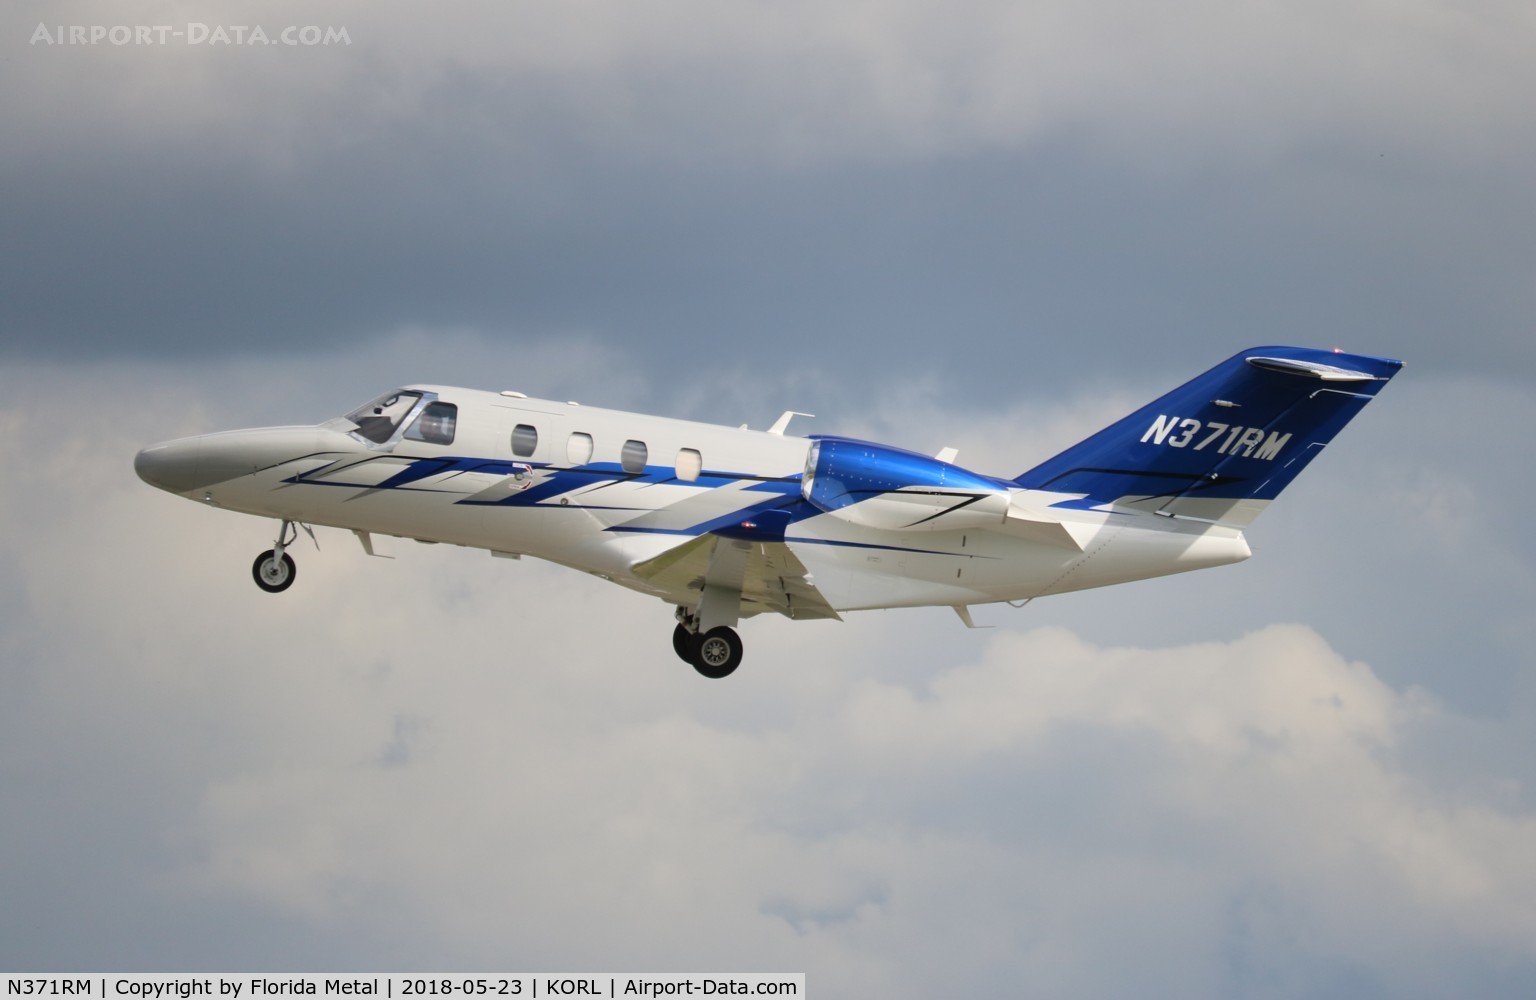 N371RM, 2015 Cessna 525 Citation M2 C/N 525-0900, C525M zx